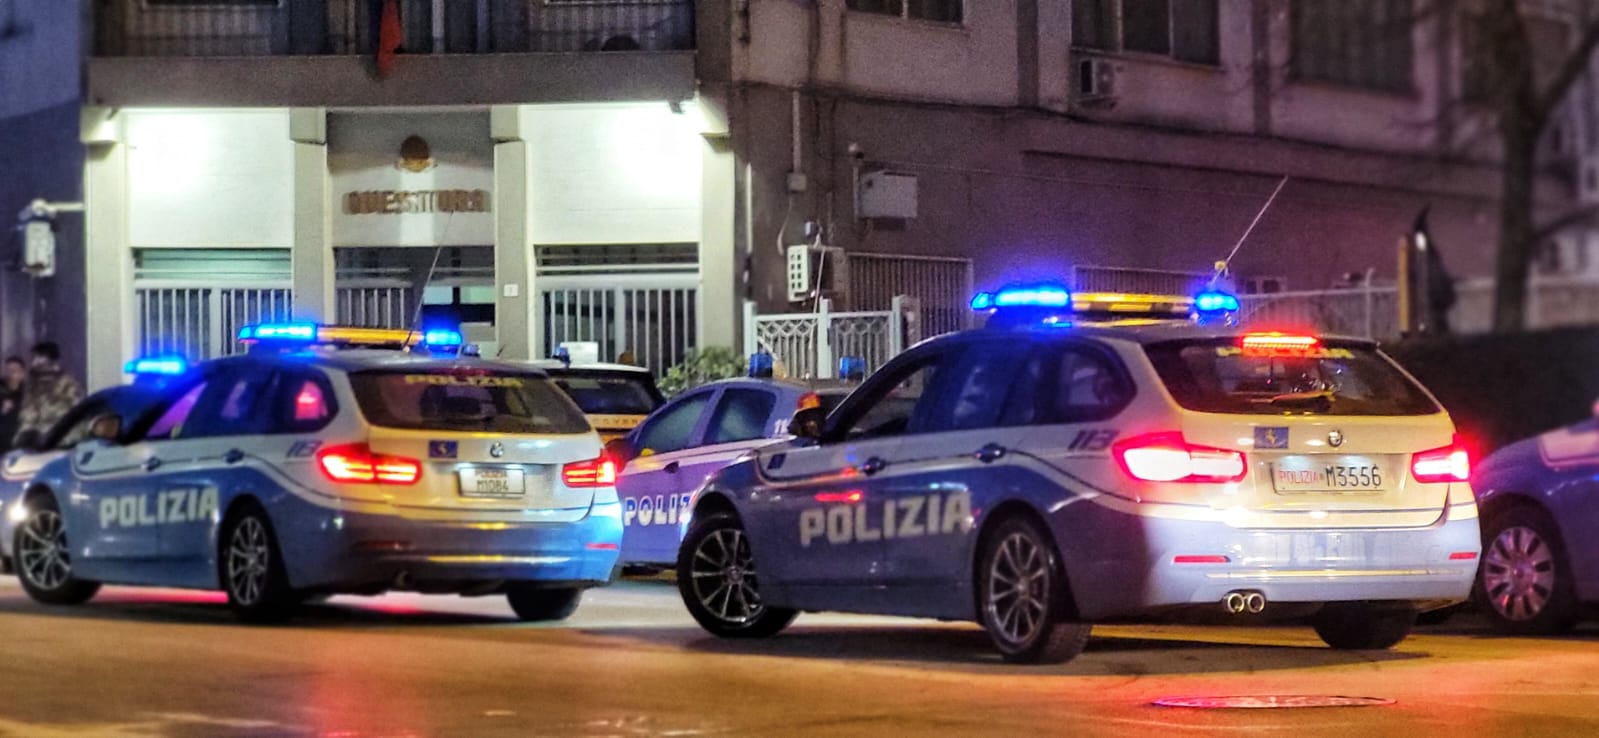 Caltanissetta, operazione “Fake cars”: la Polizia di Stato esegue 9 misure cautelari.